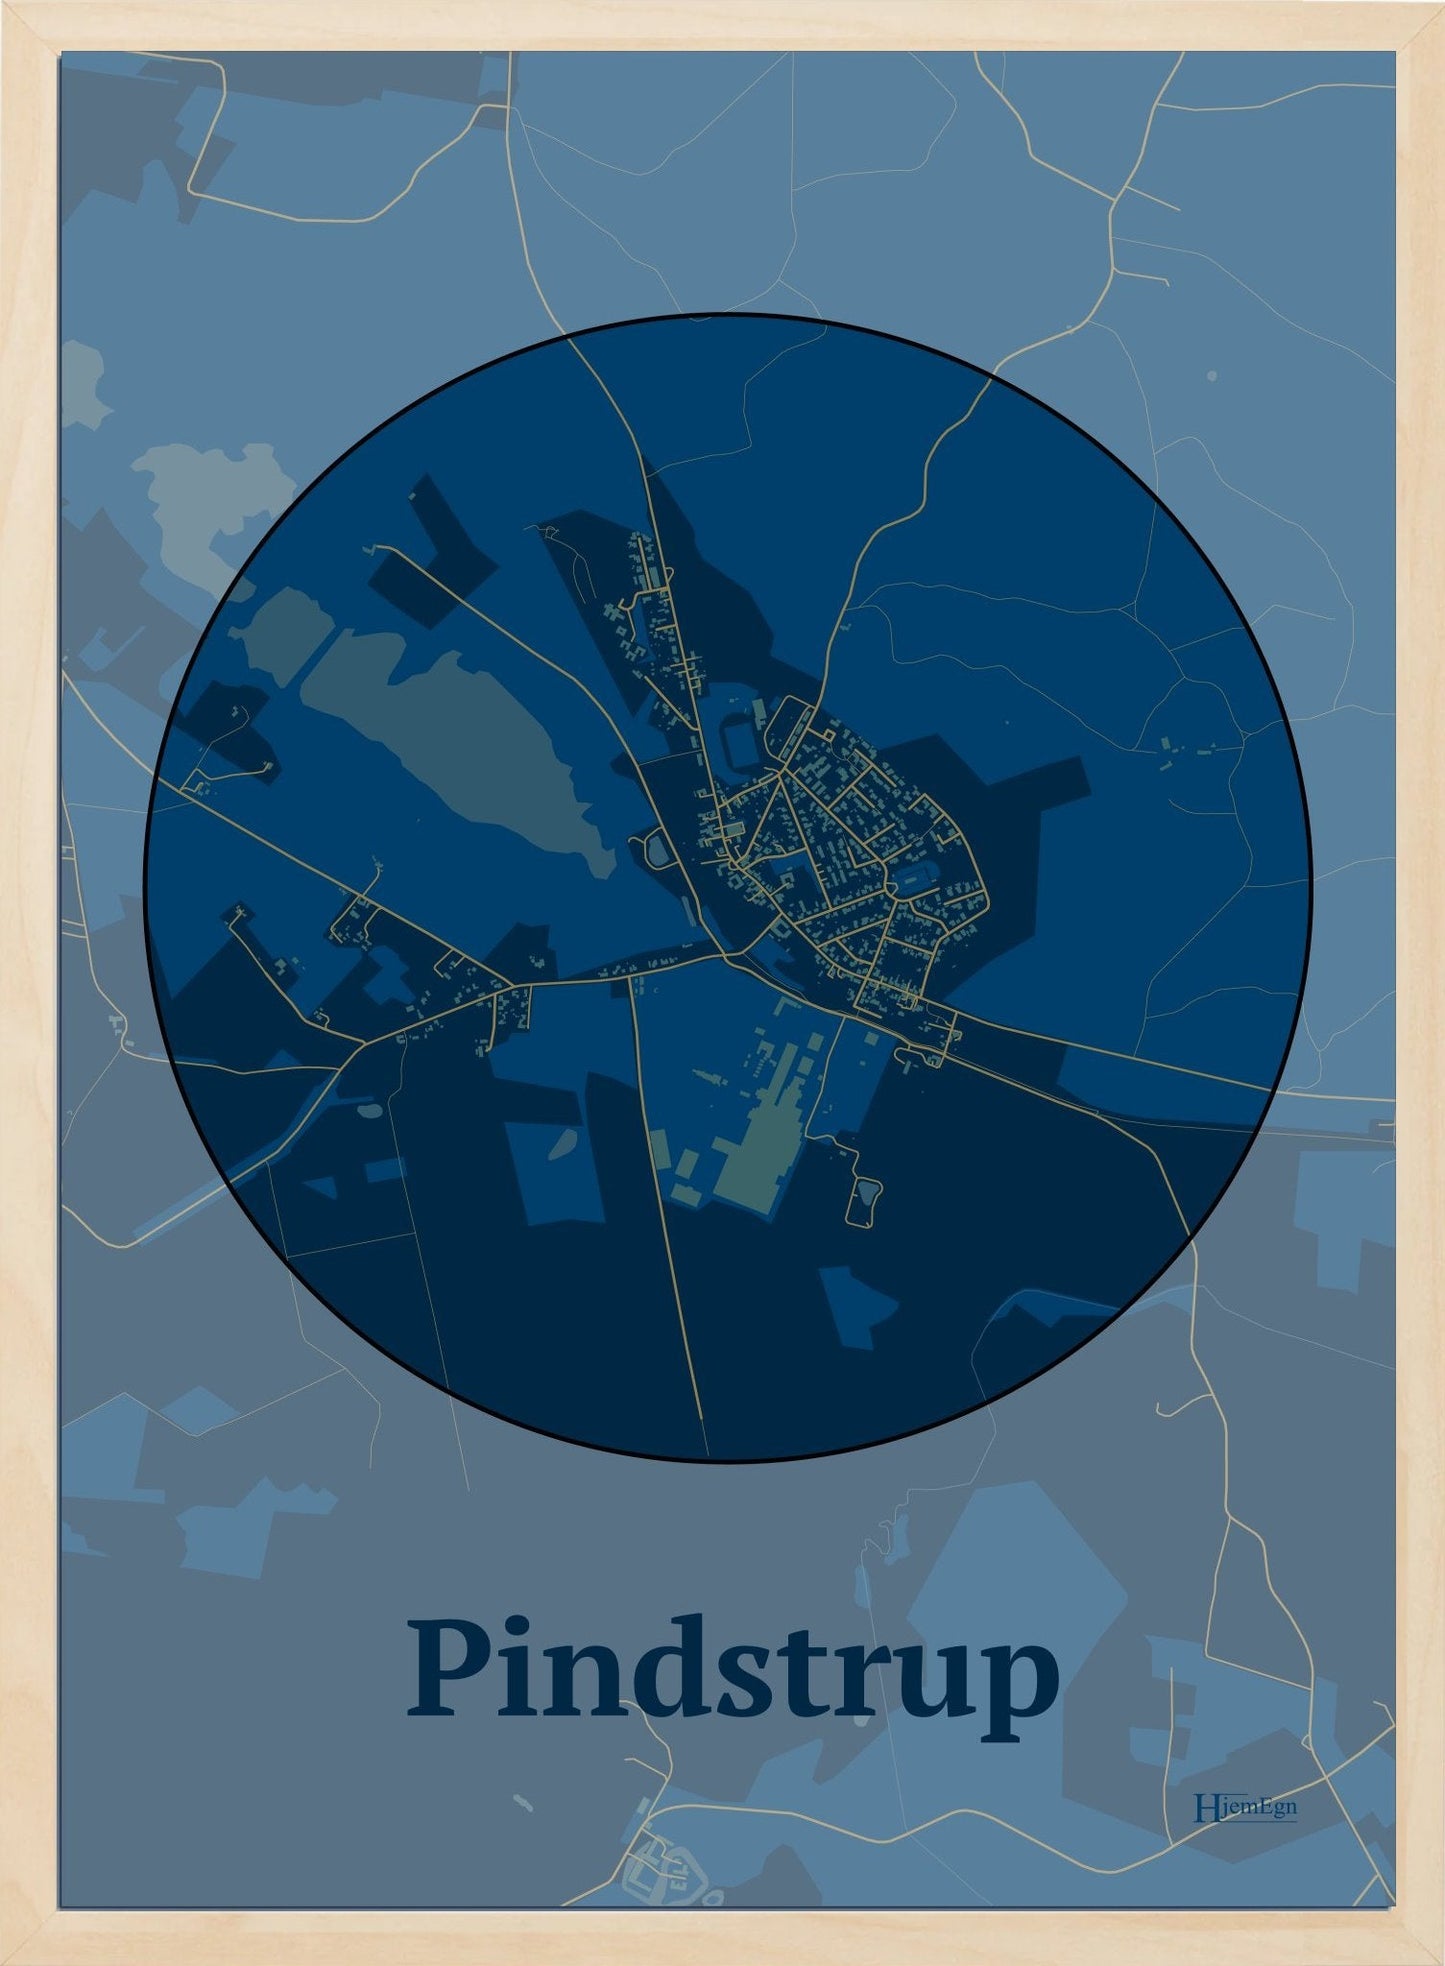 Pindstrup plakat i farve mørk blå og HjemEgn.dk design centrum. Design bykort for Pindstrup